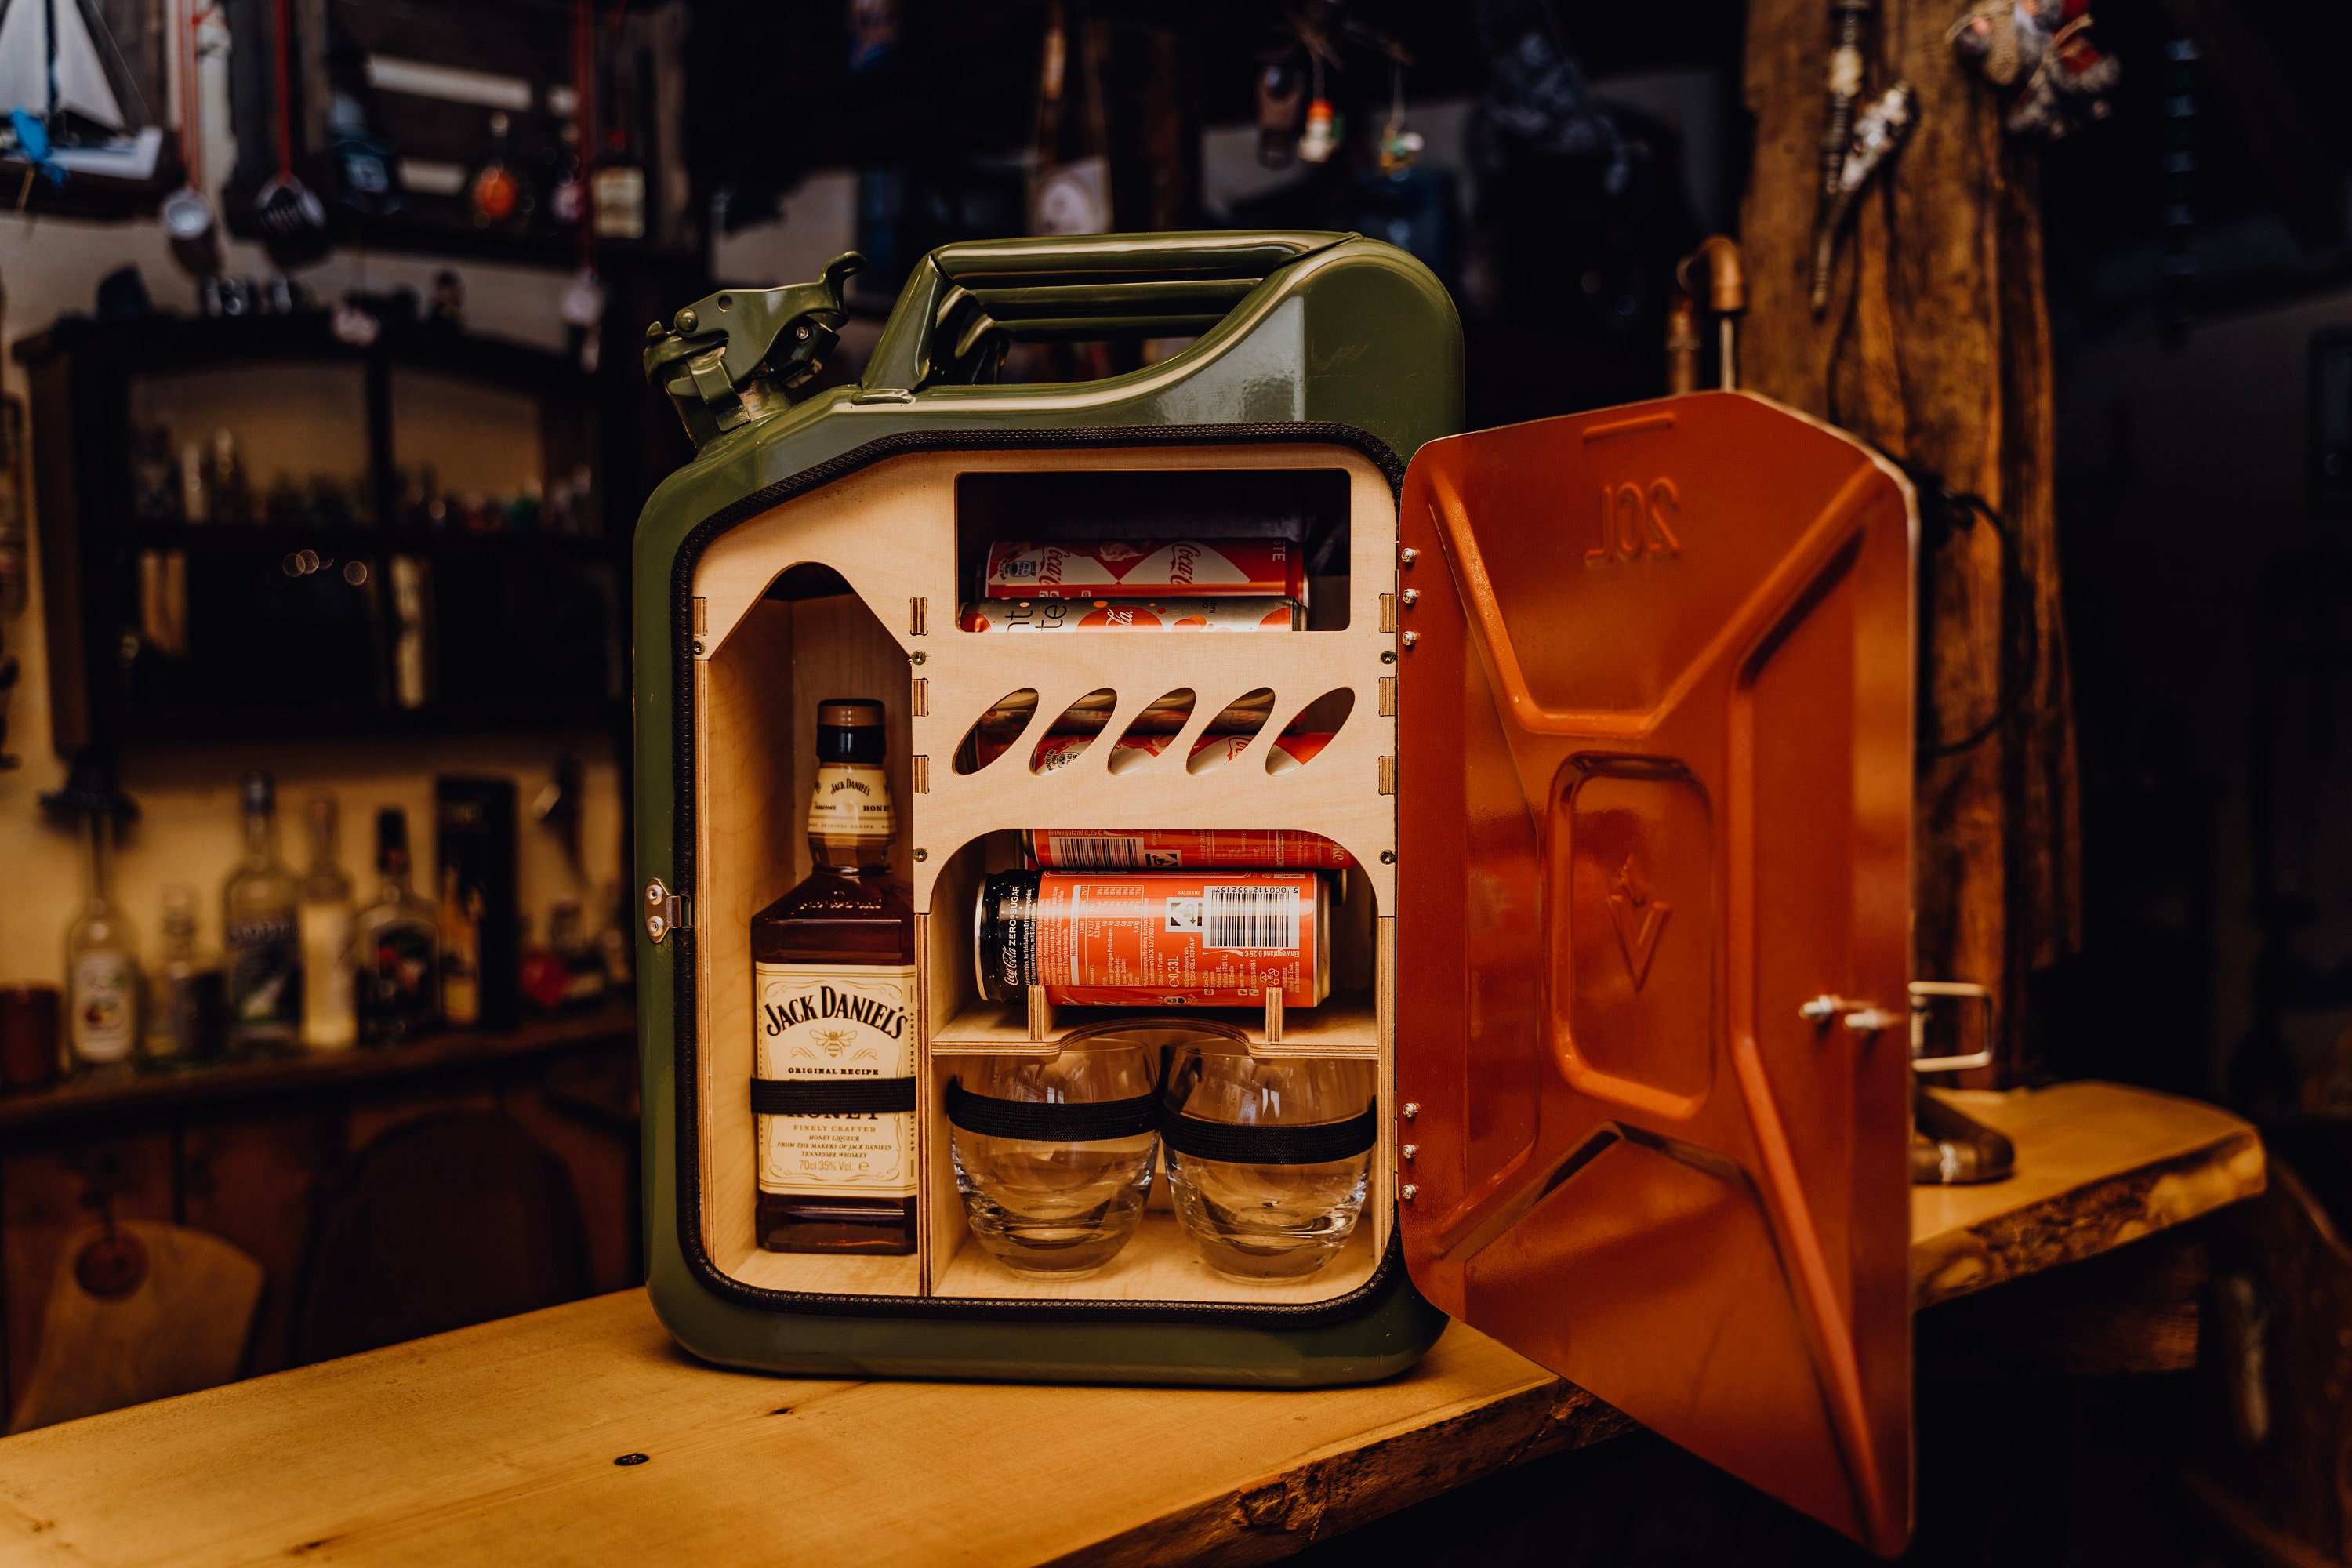 Original Tullamore Dew-Kanister für Whiskey-Liebhaber in Tschechische  Republik